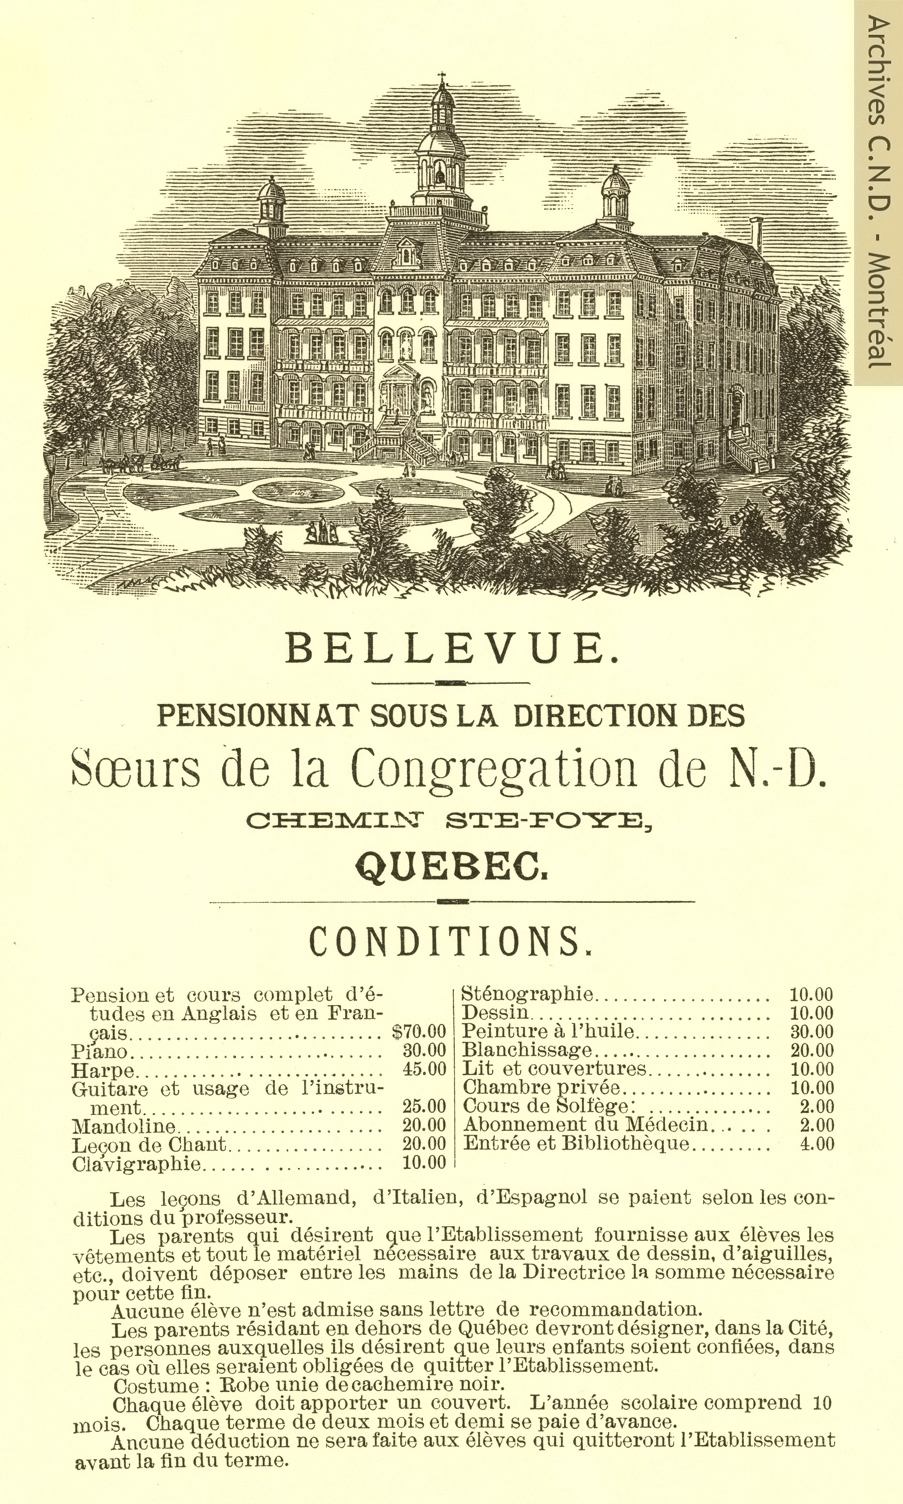 Leaflet from Notre-Dame-de-Bellevue boarding school